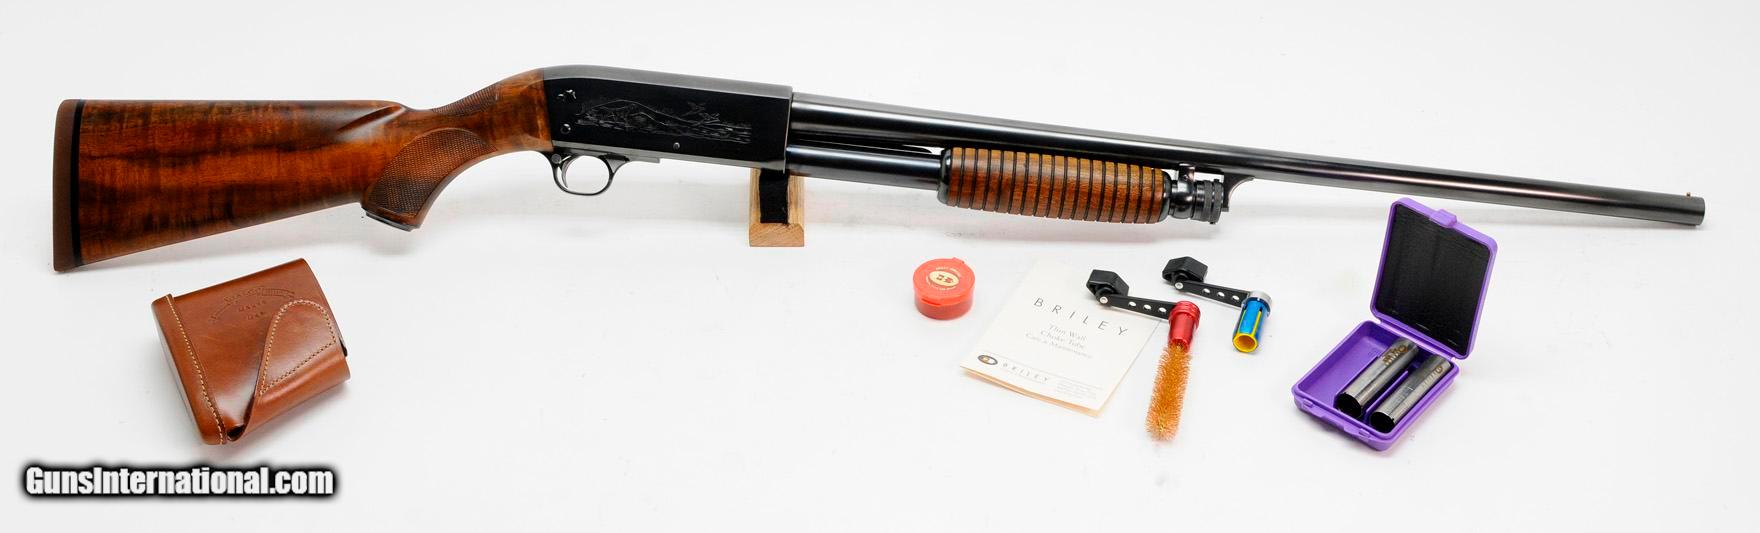 Ithaca model 37 shotgun